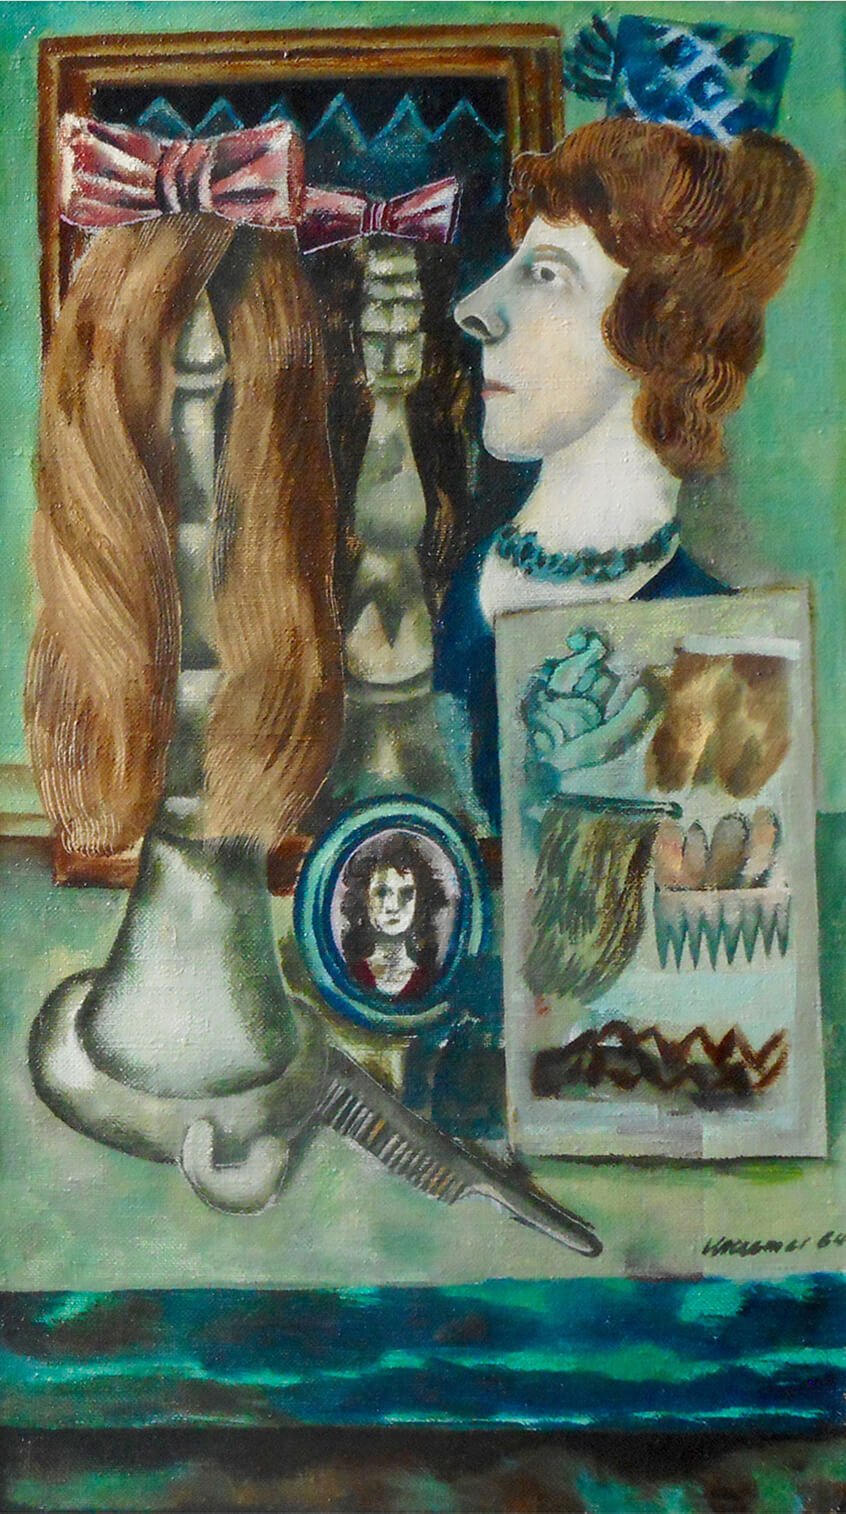 Dieter Kraemer, Hairdresser's Window, 1964, oil on canvas, 70 x 40 cm